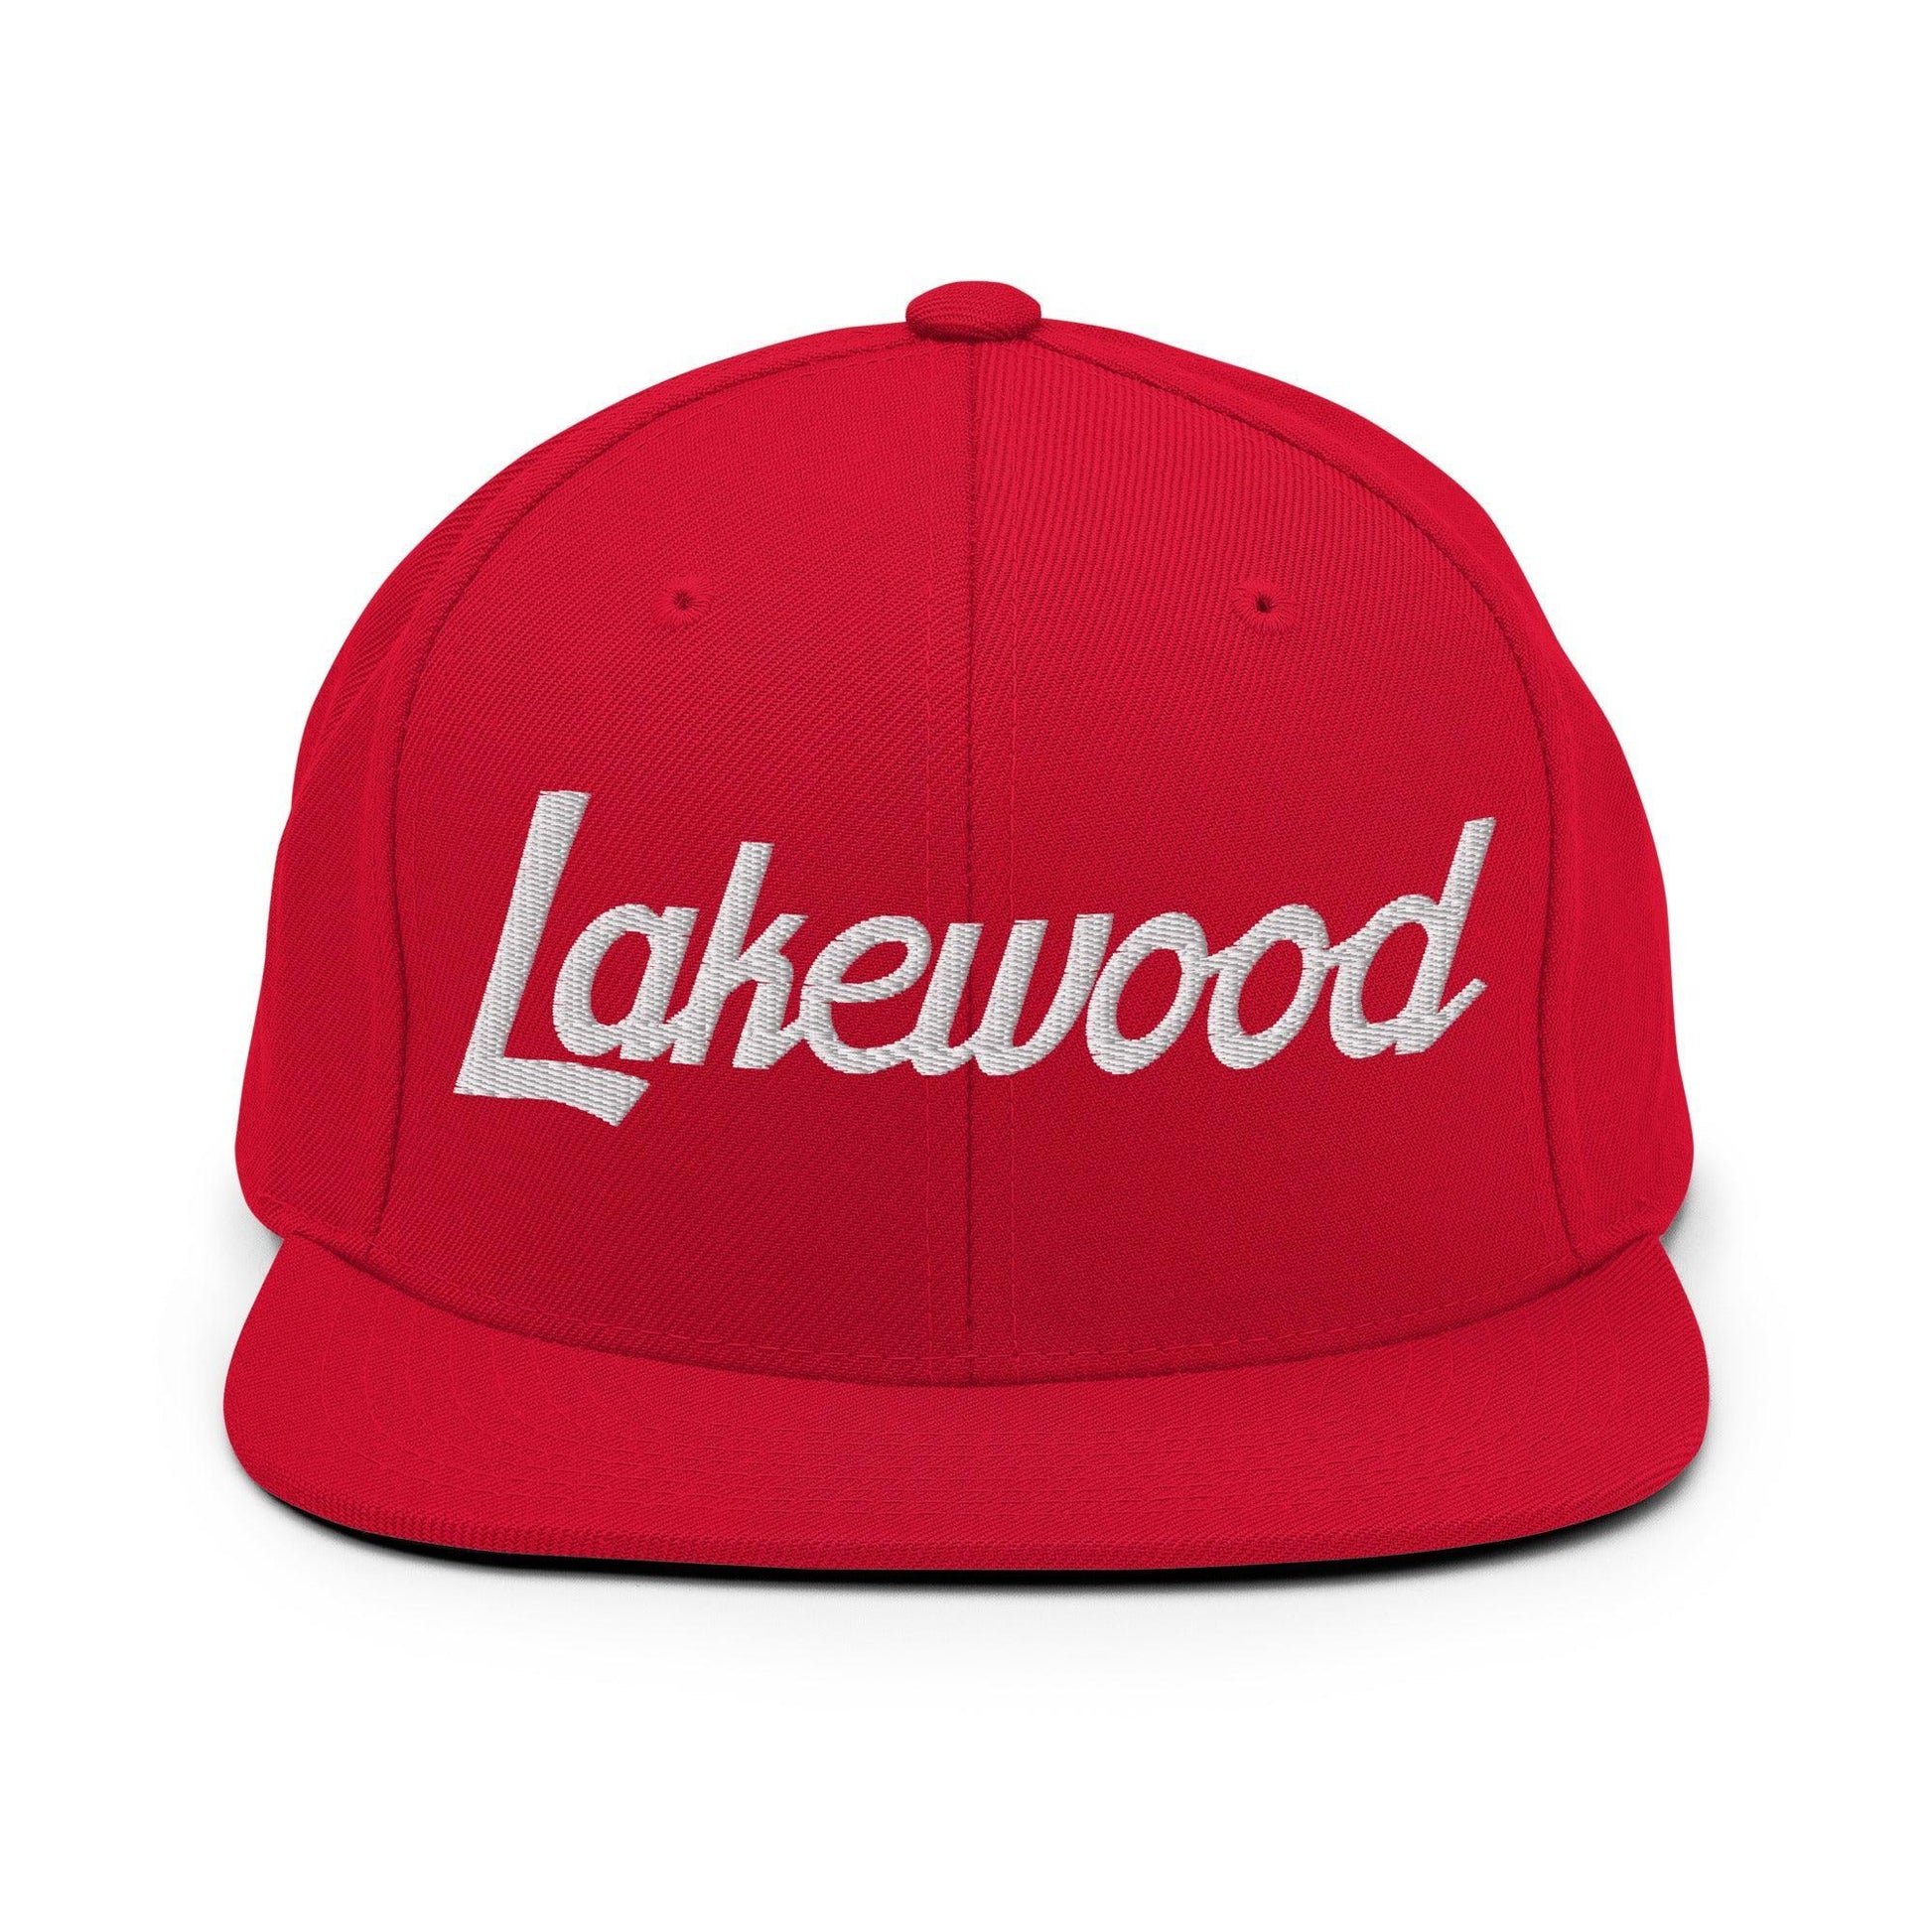 Lakewood Script Snapback Hat Red